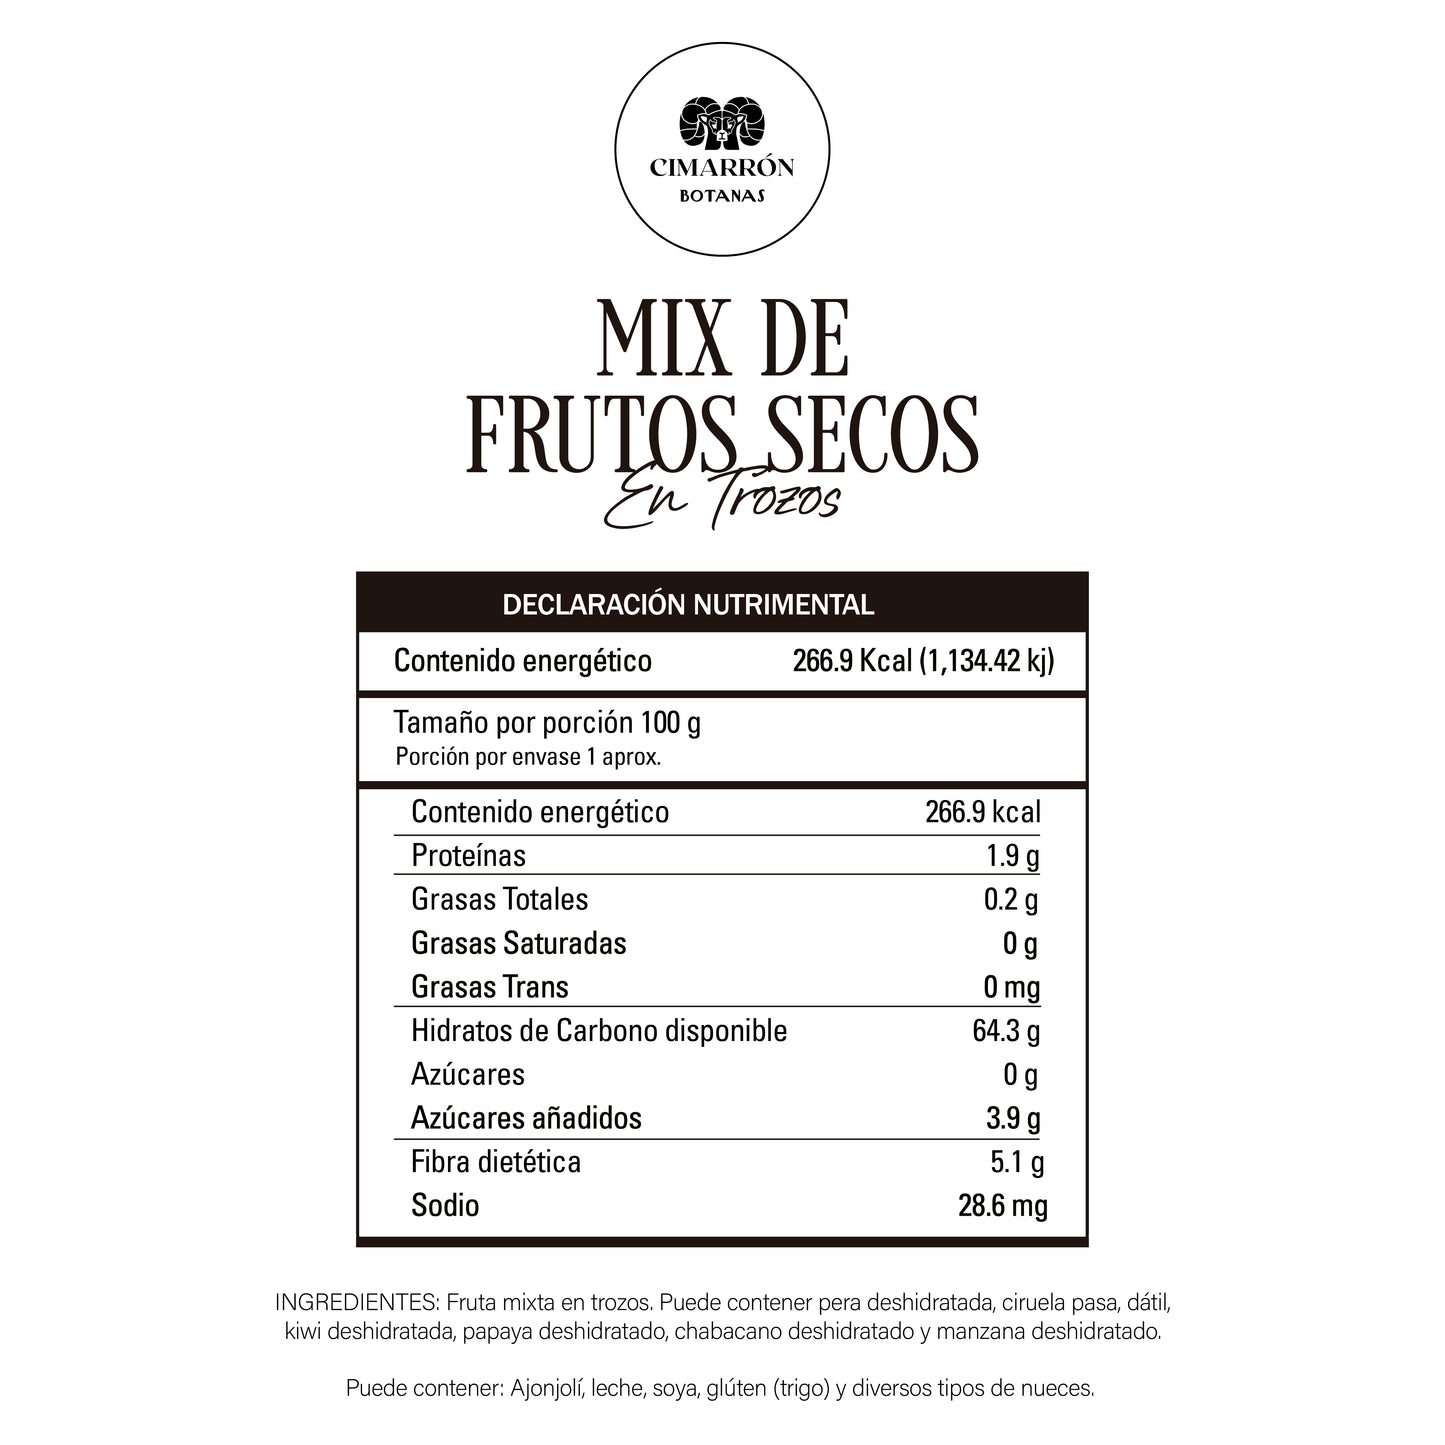 Mix fruta deshidratada entera 1kg - Premium Frutos secos y mucho más en Cimarrón.Shop - $319! Envío gratis